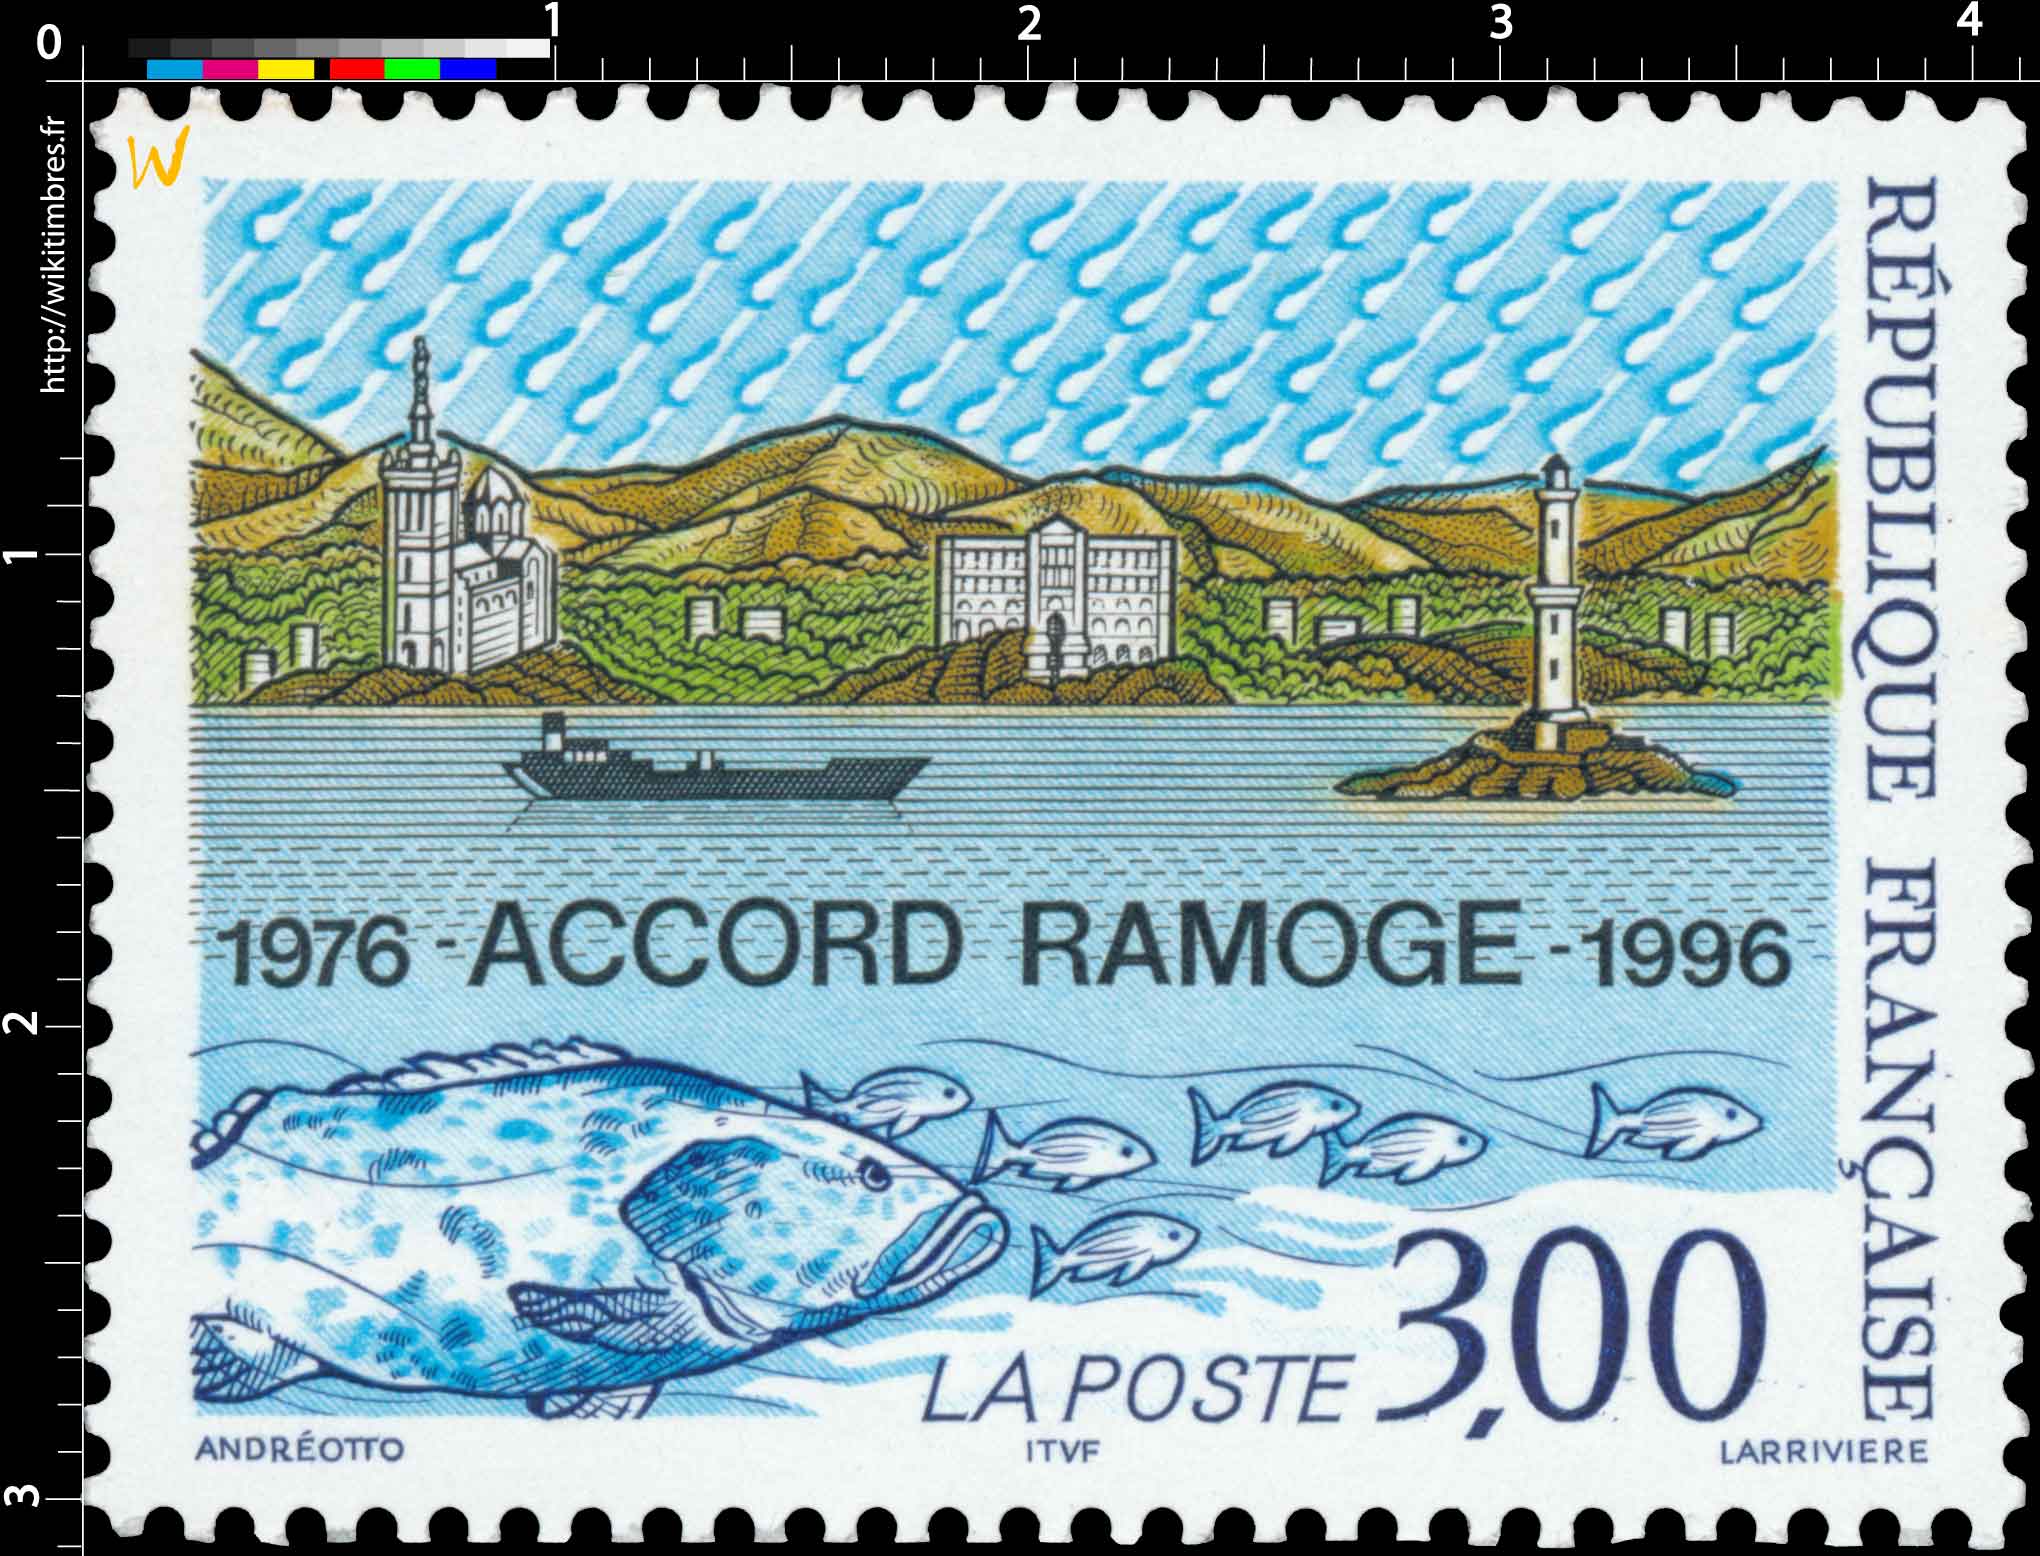 ACCORD RAMOGE 1976-1996